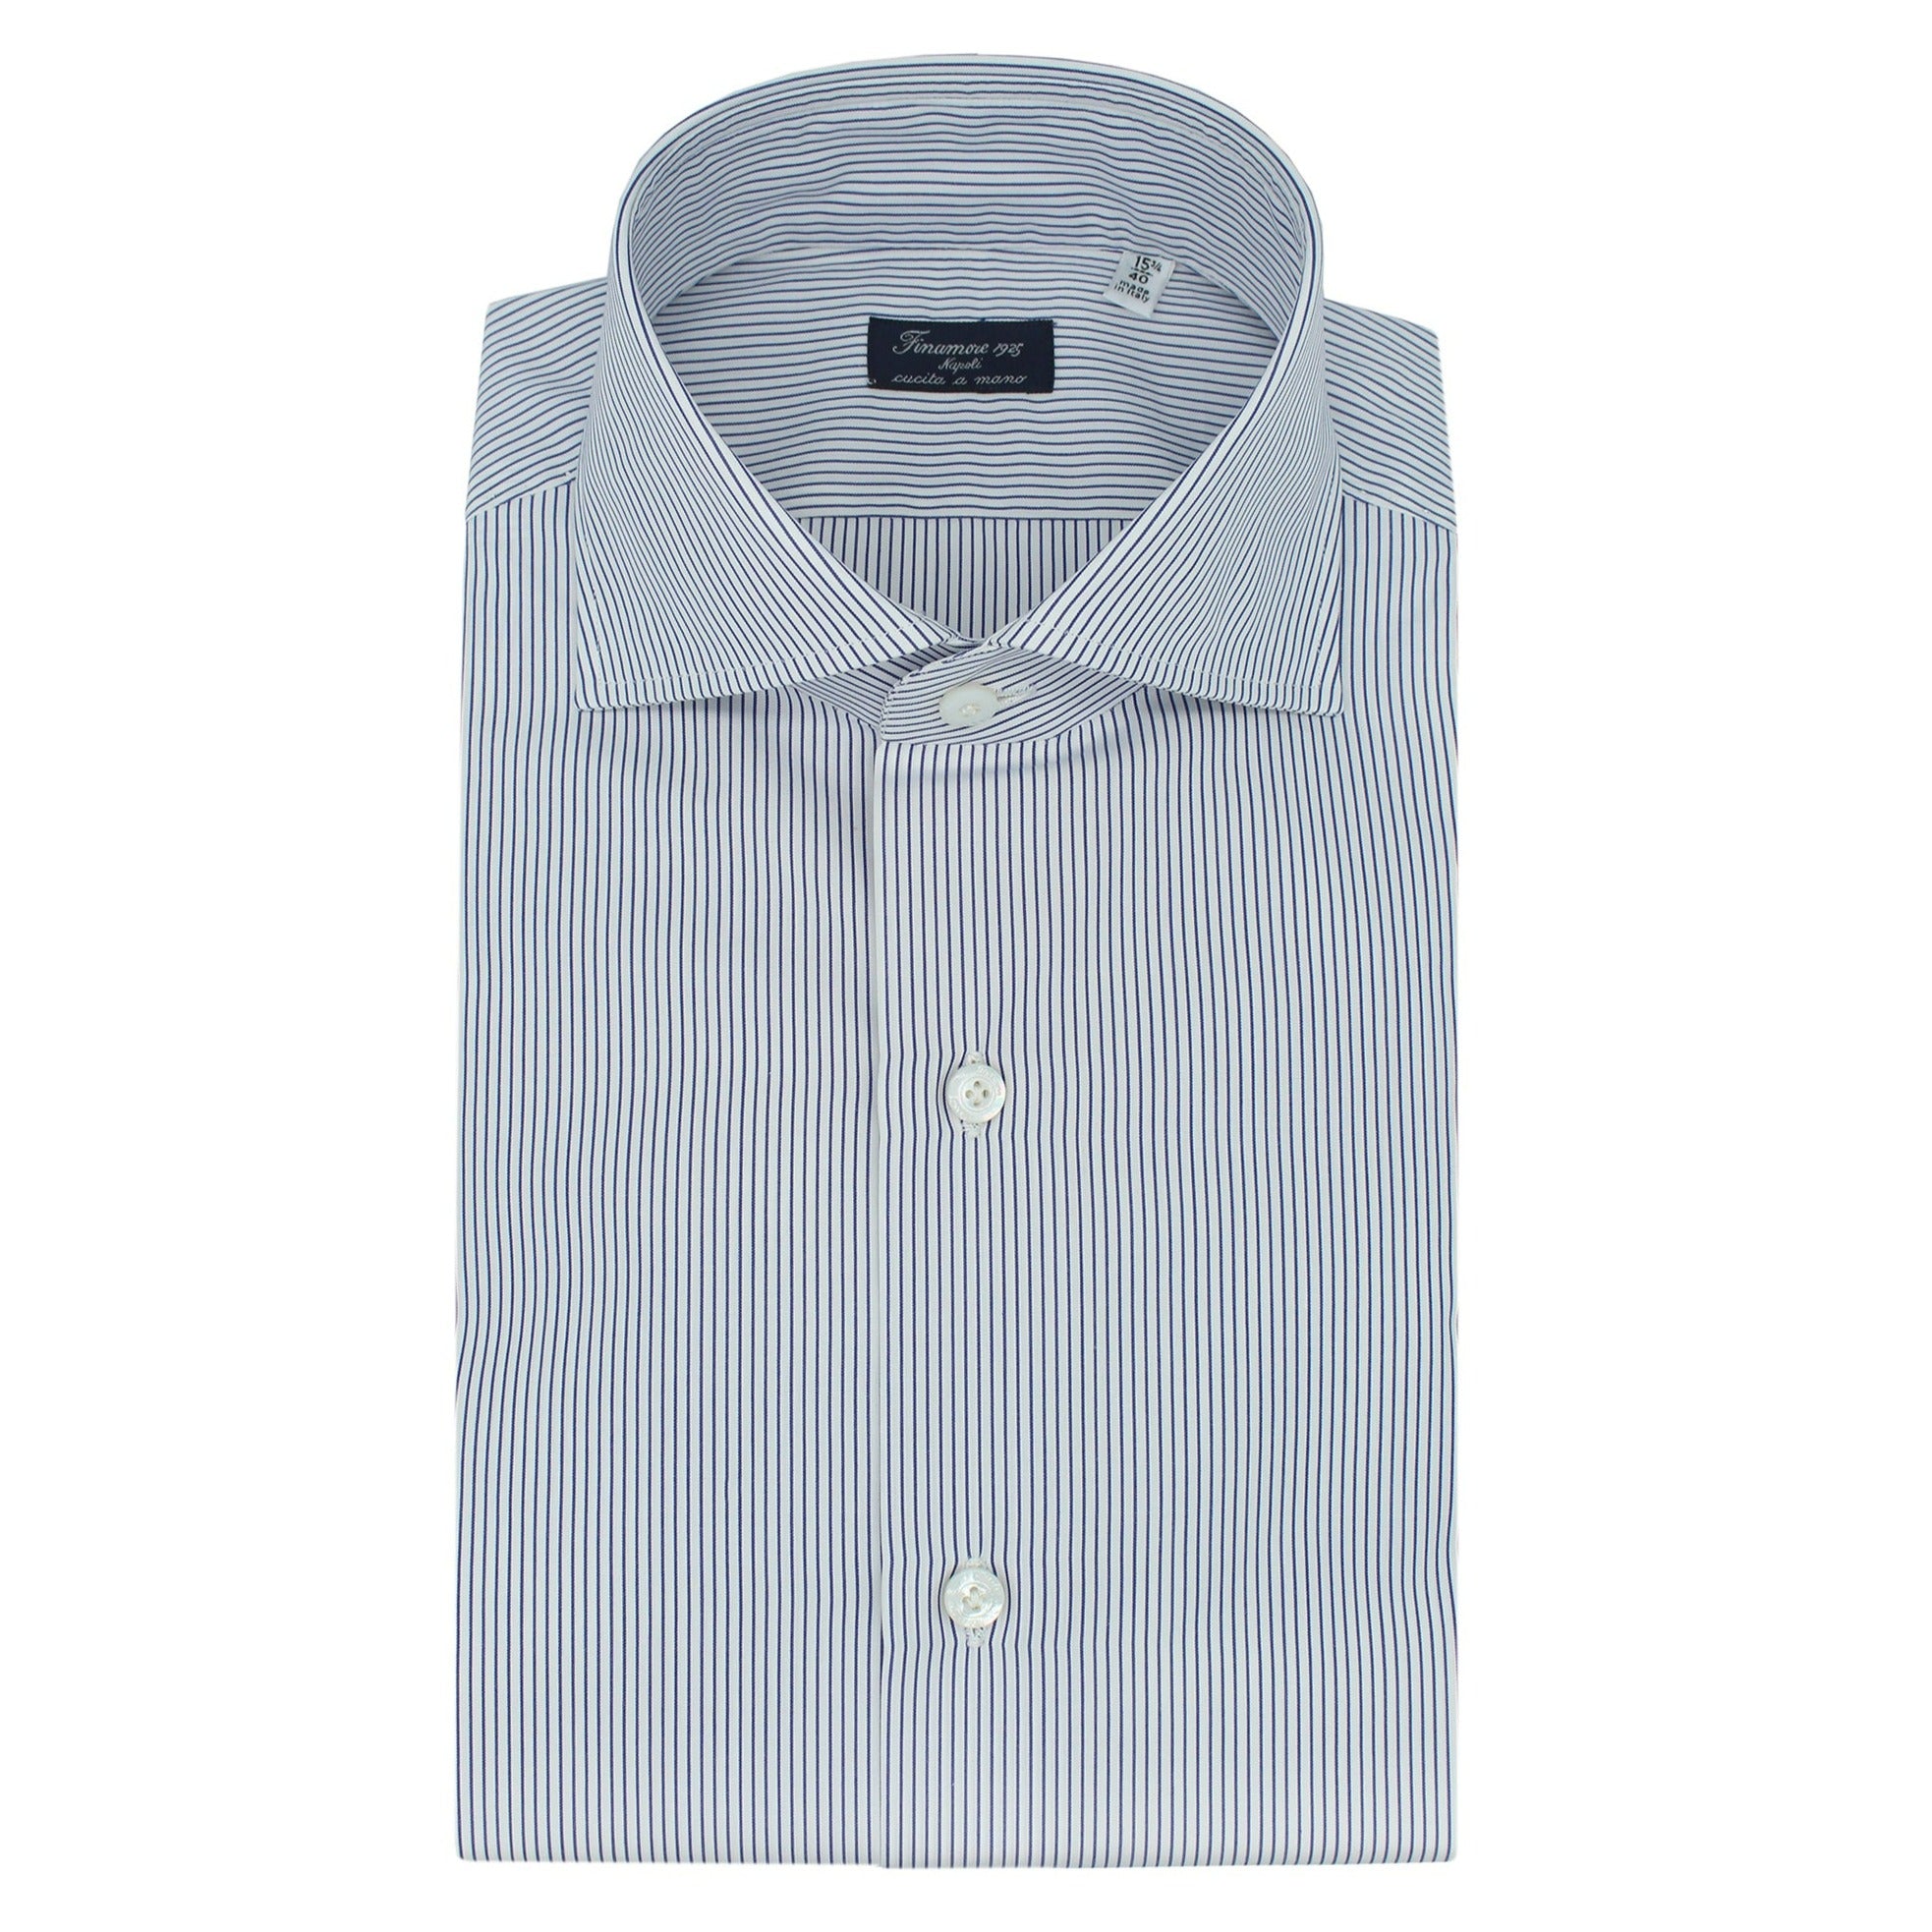 Classic fit shirt Napoli in cotton white bottom micro stripe blu